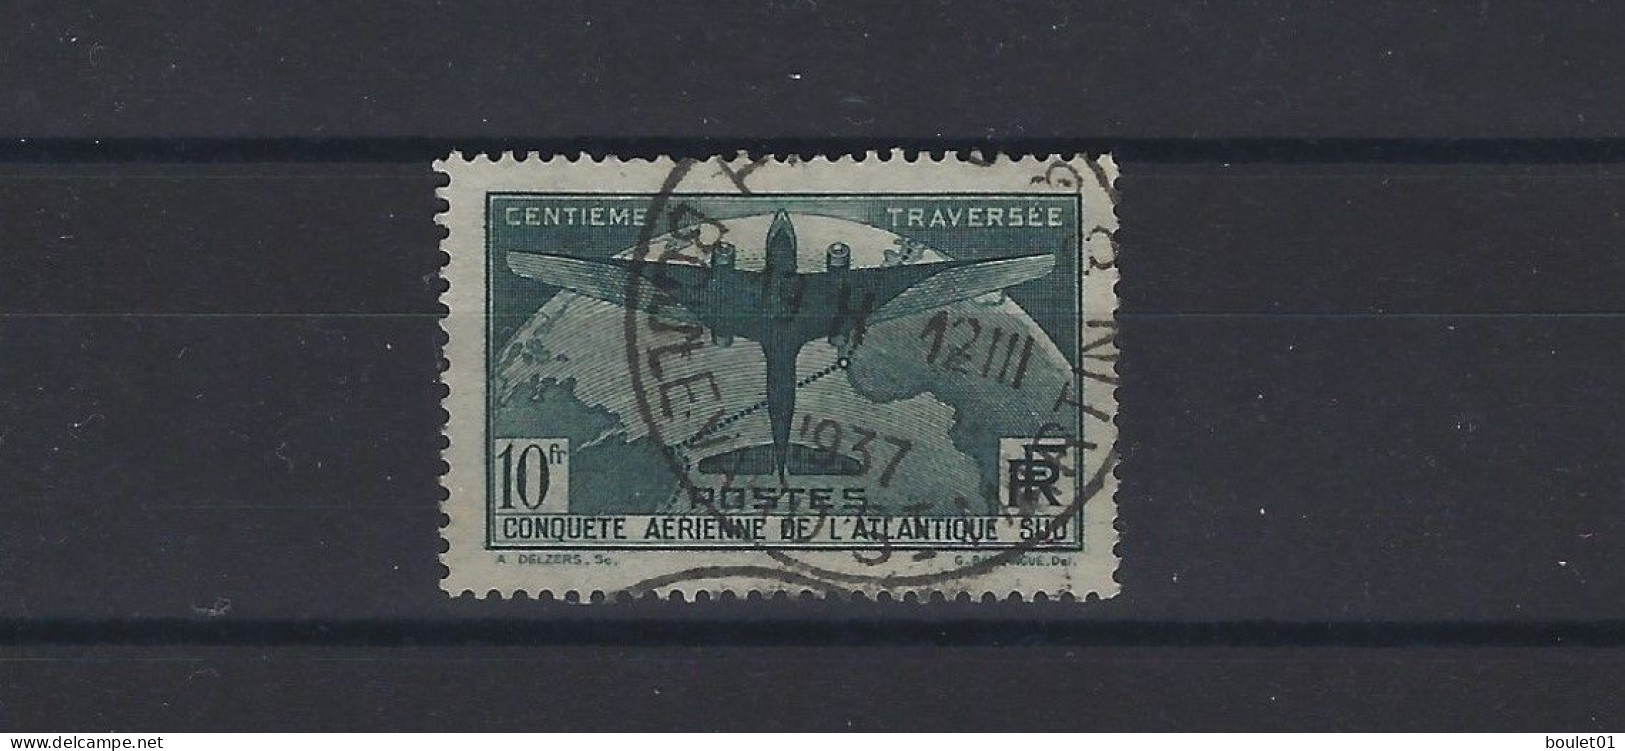 Très Beau Timbre N° 321 Bien Centré Et Belle Oblitération ( Cote 150 Euros) - Used Stamps